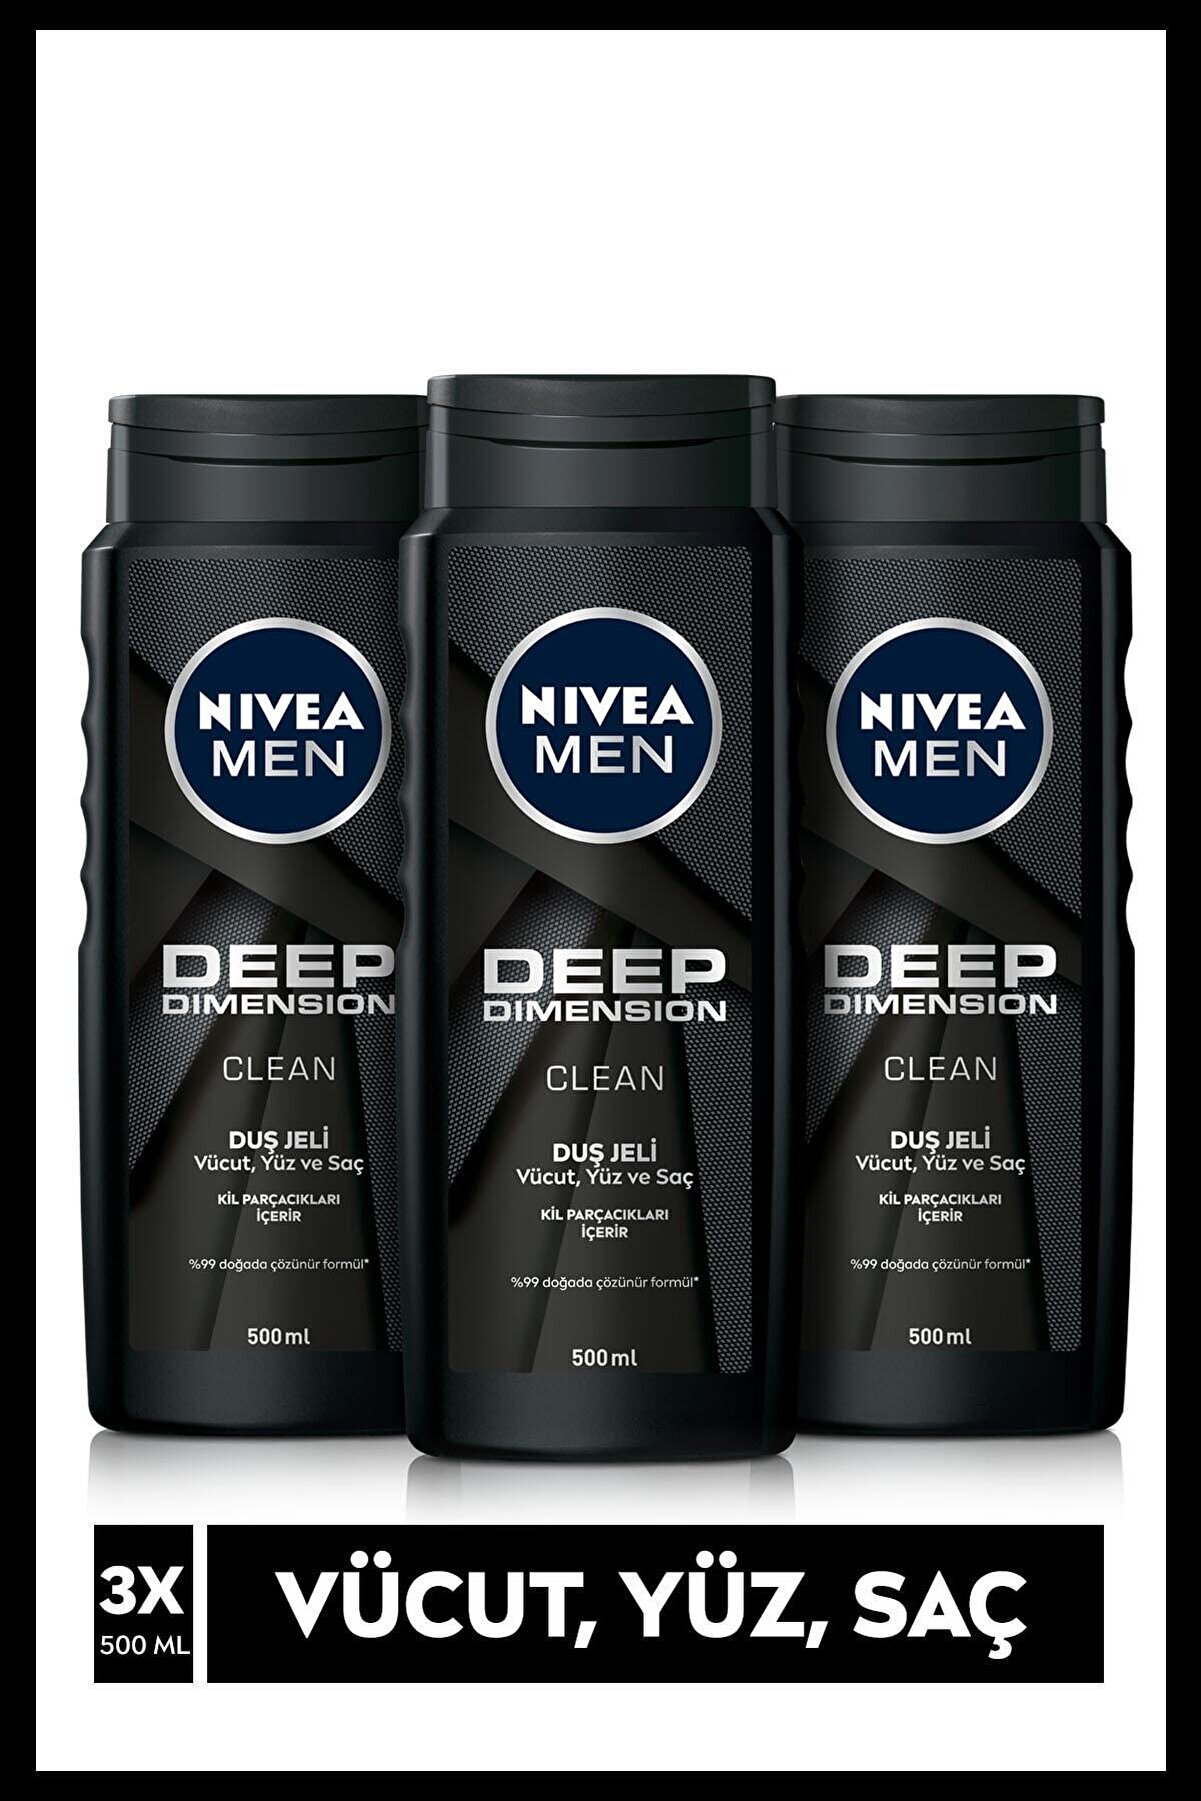 NIVEA MEN Erkek Duş Jeli Deep Dimension 500 ml x3 Adet, Vücut,Yüz ve Saç için Temizleme ve Bakım